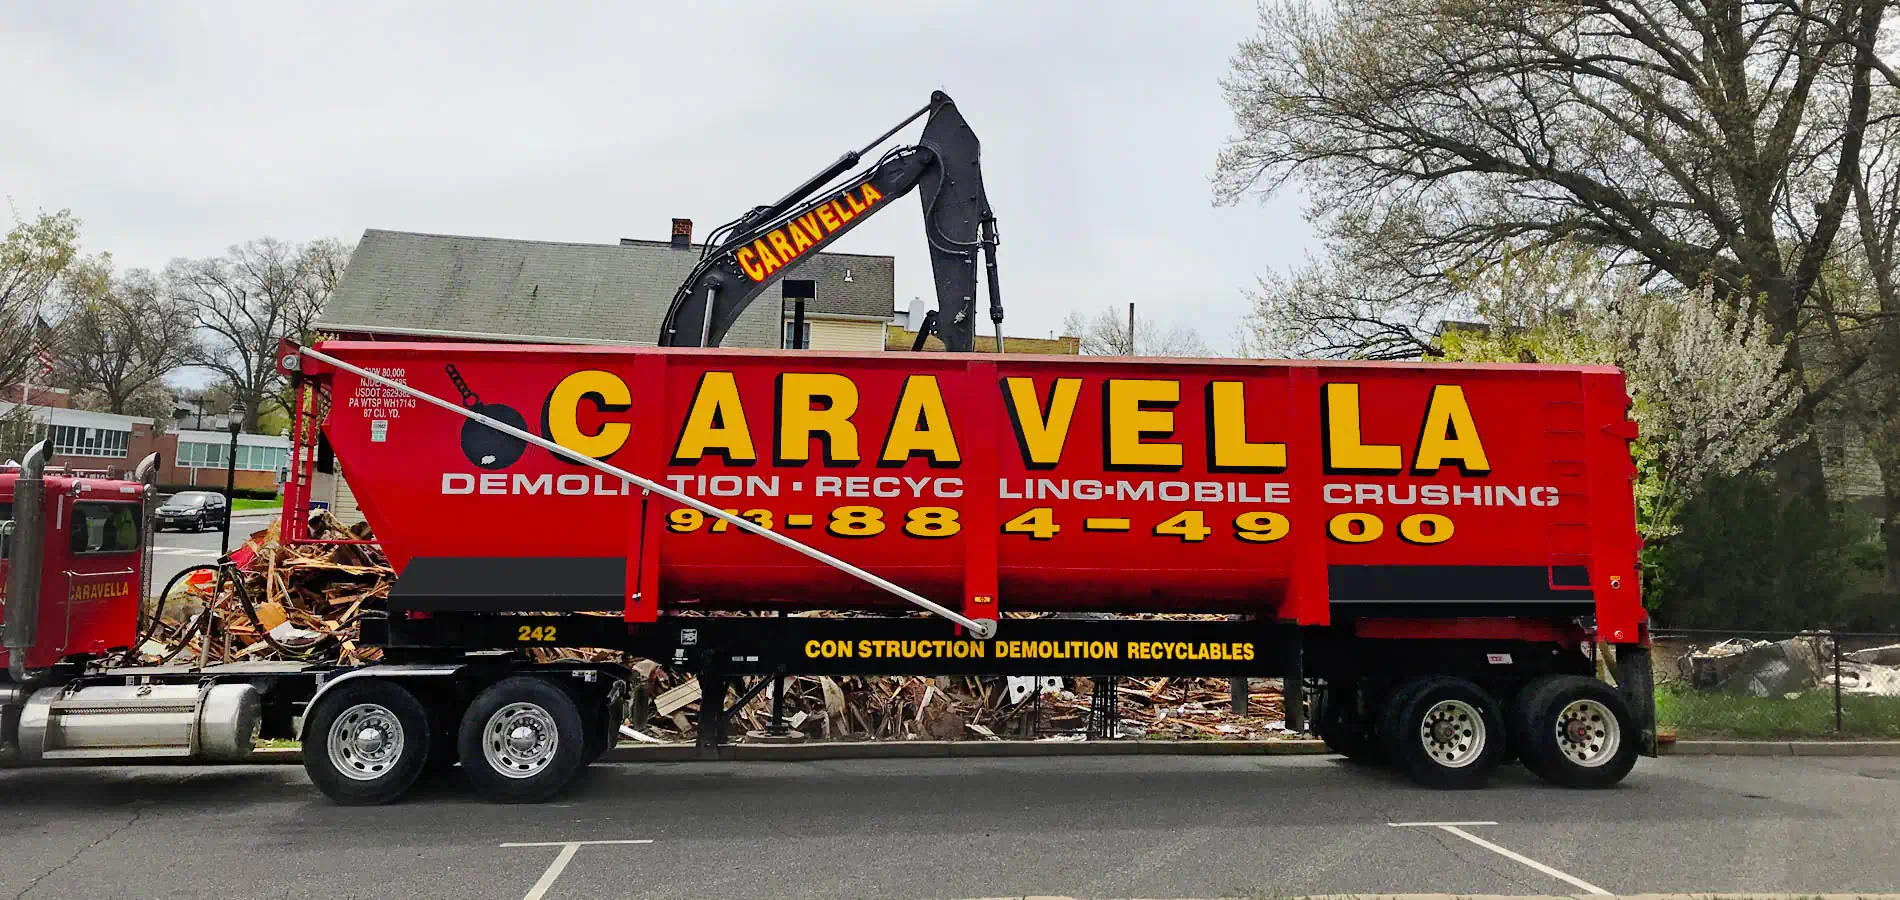 Demolition Services in Paramus, NJ 07652 | Caravella Demolition